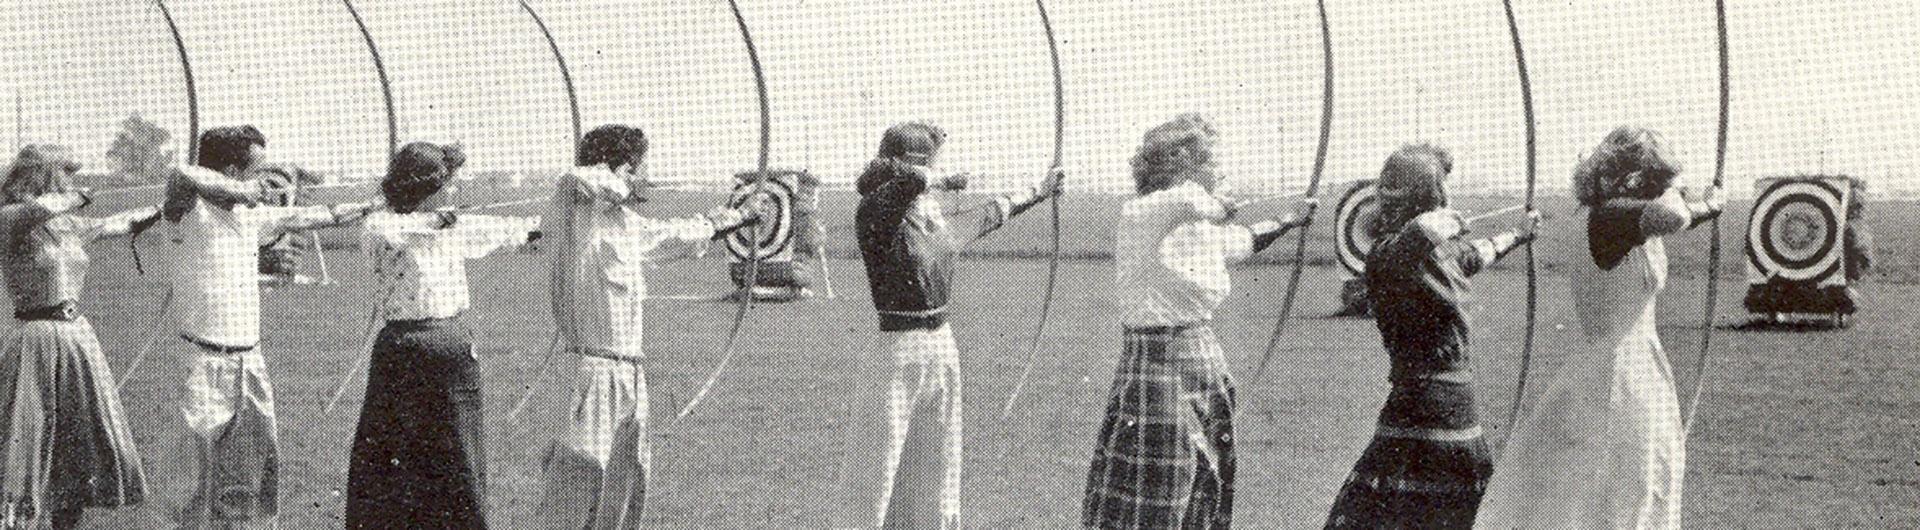 students practice archery 